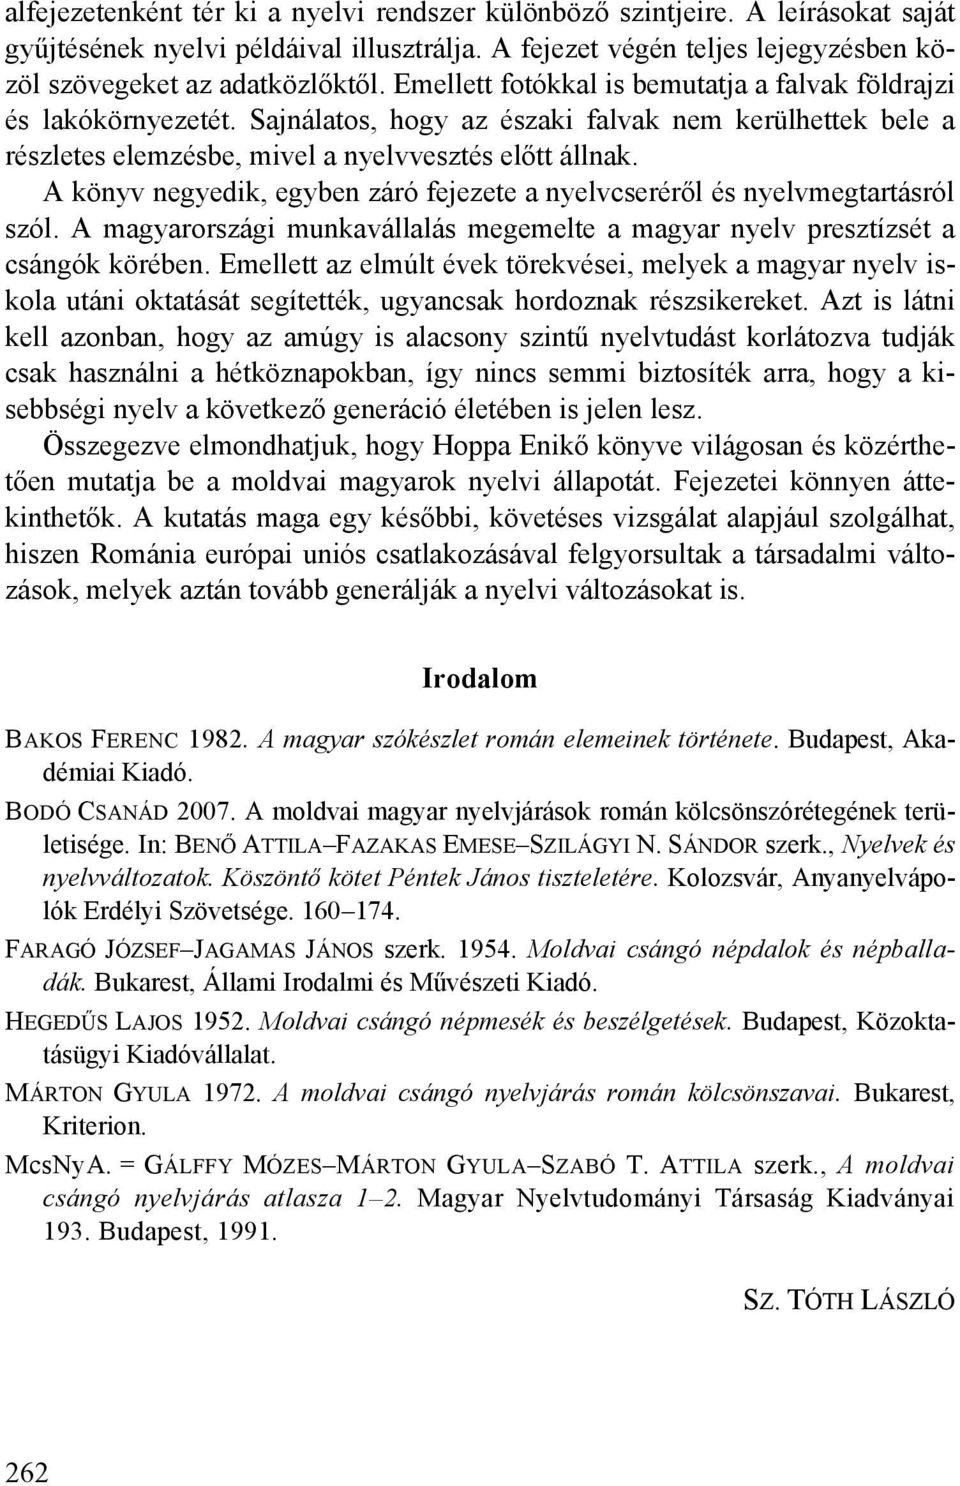 A könyv negyedik, egyben záró fejezete a nyelvcseréről és nyelvmegtartásról szól. A magyarországi munkavállalás megemelte a magyar nyelv presztízsét a csángók körében.